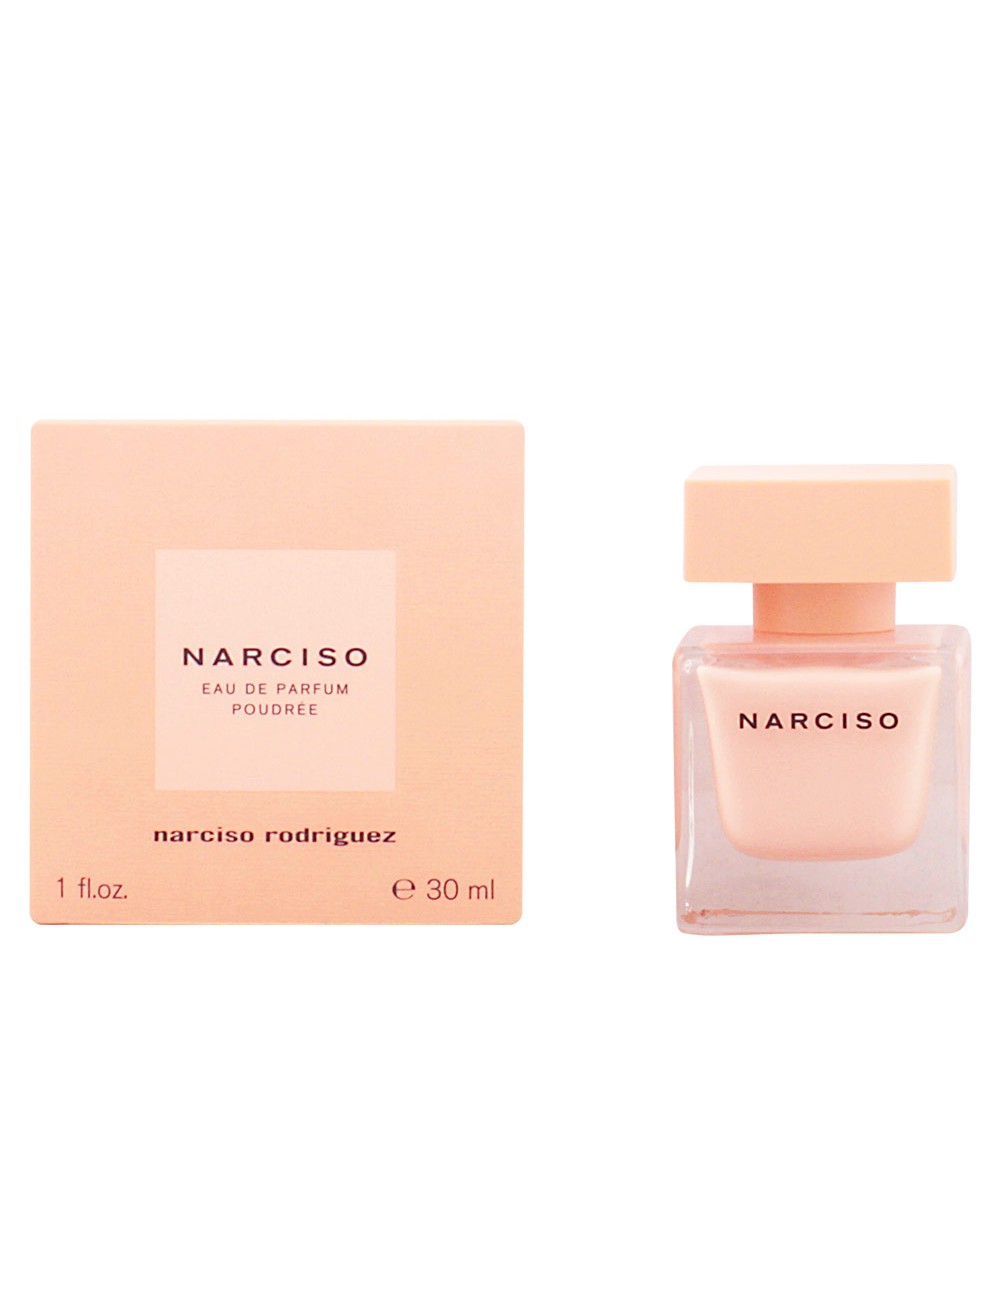 NARCISO eau de parfum poudrée vaporisateur 30 ml NE77716